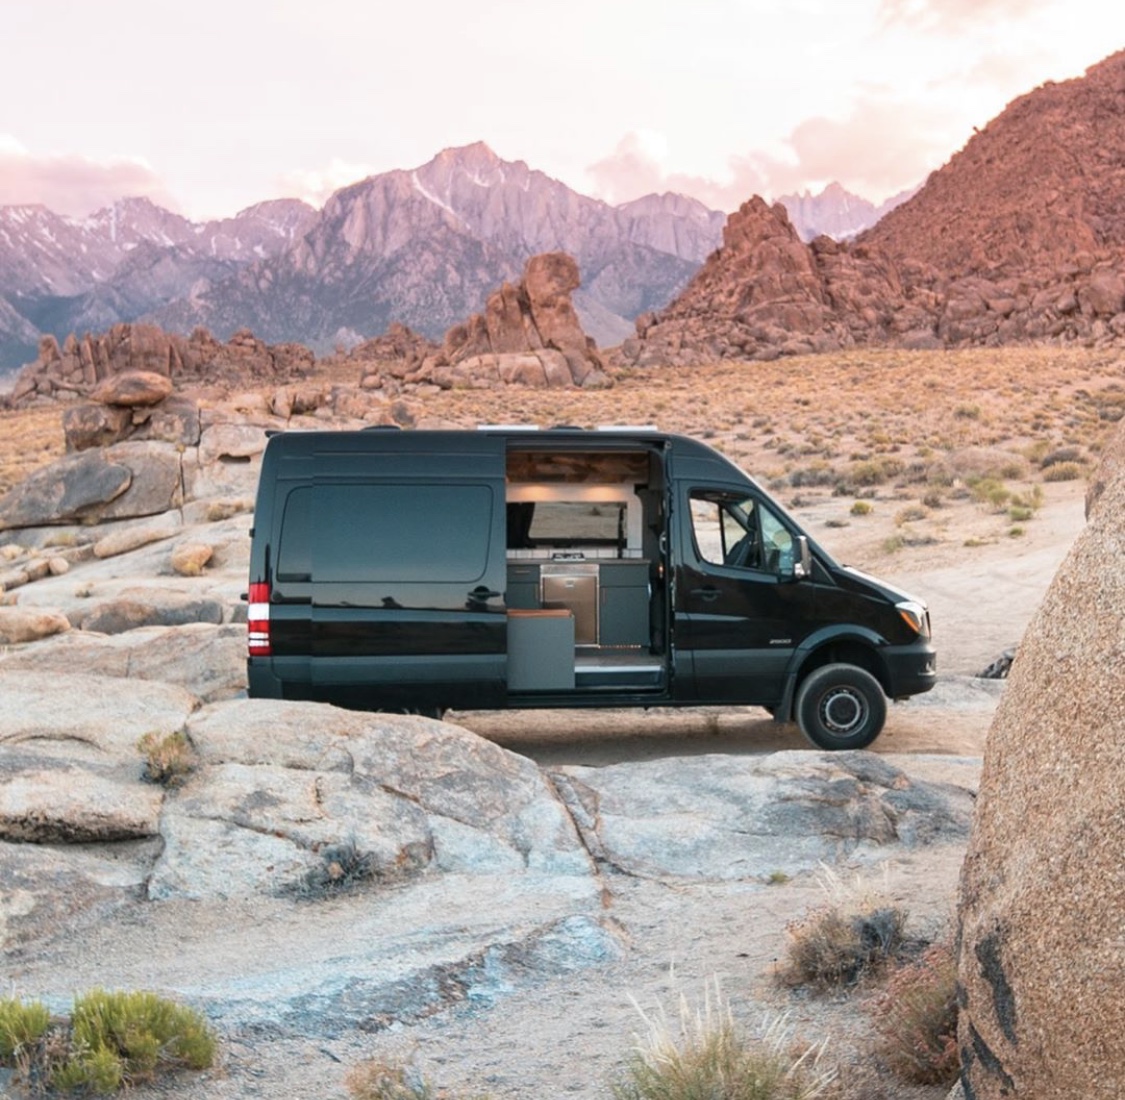 van in the desert